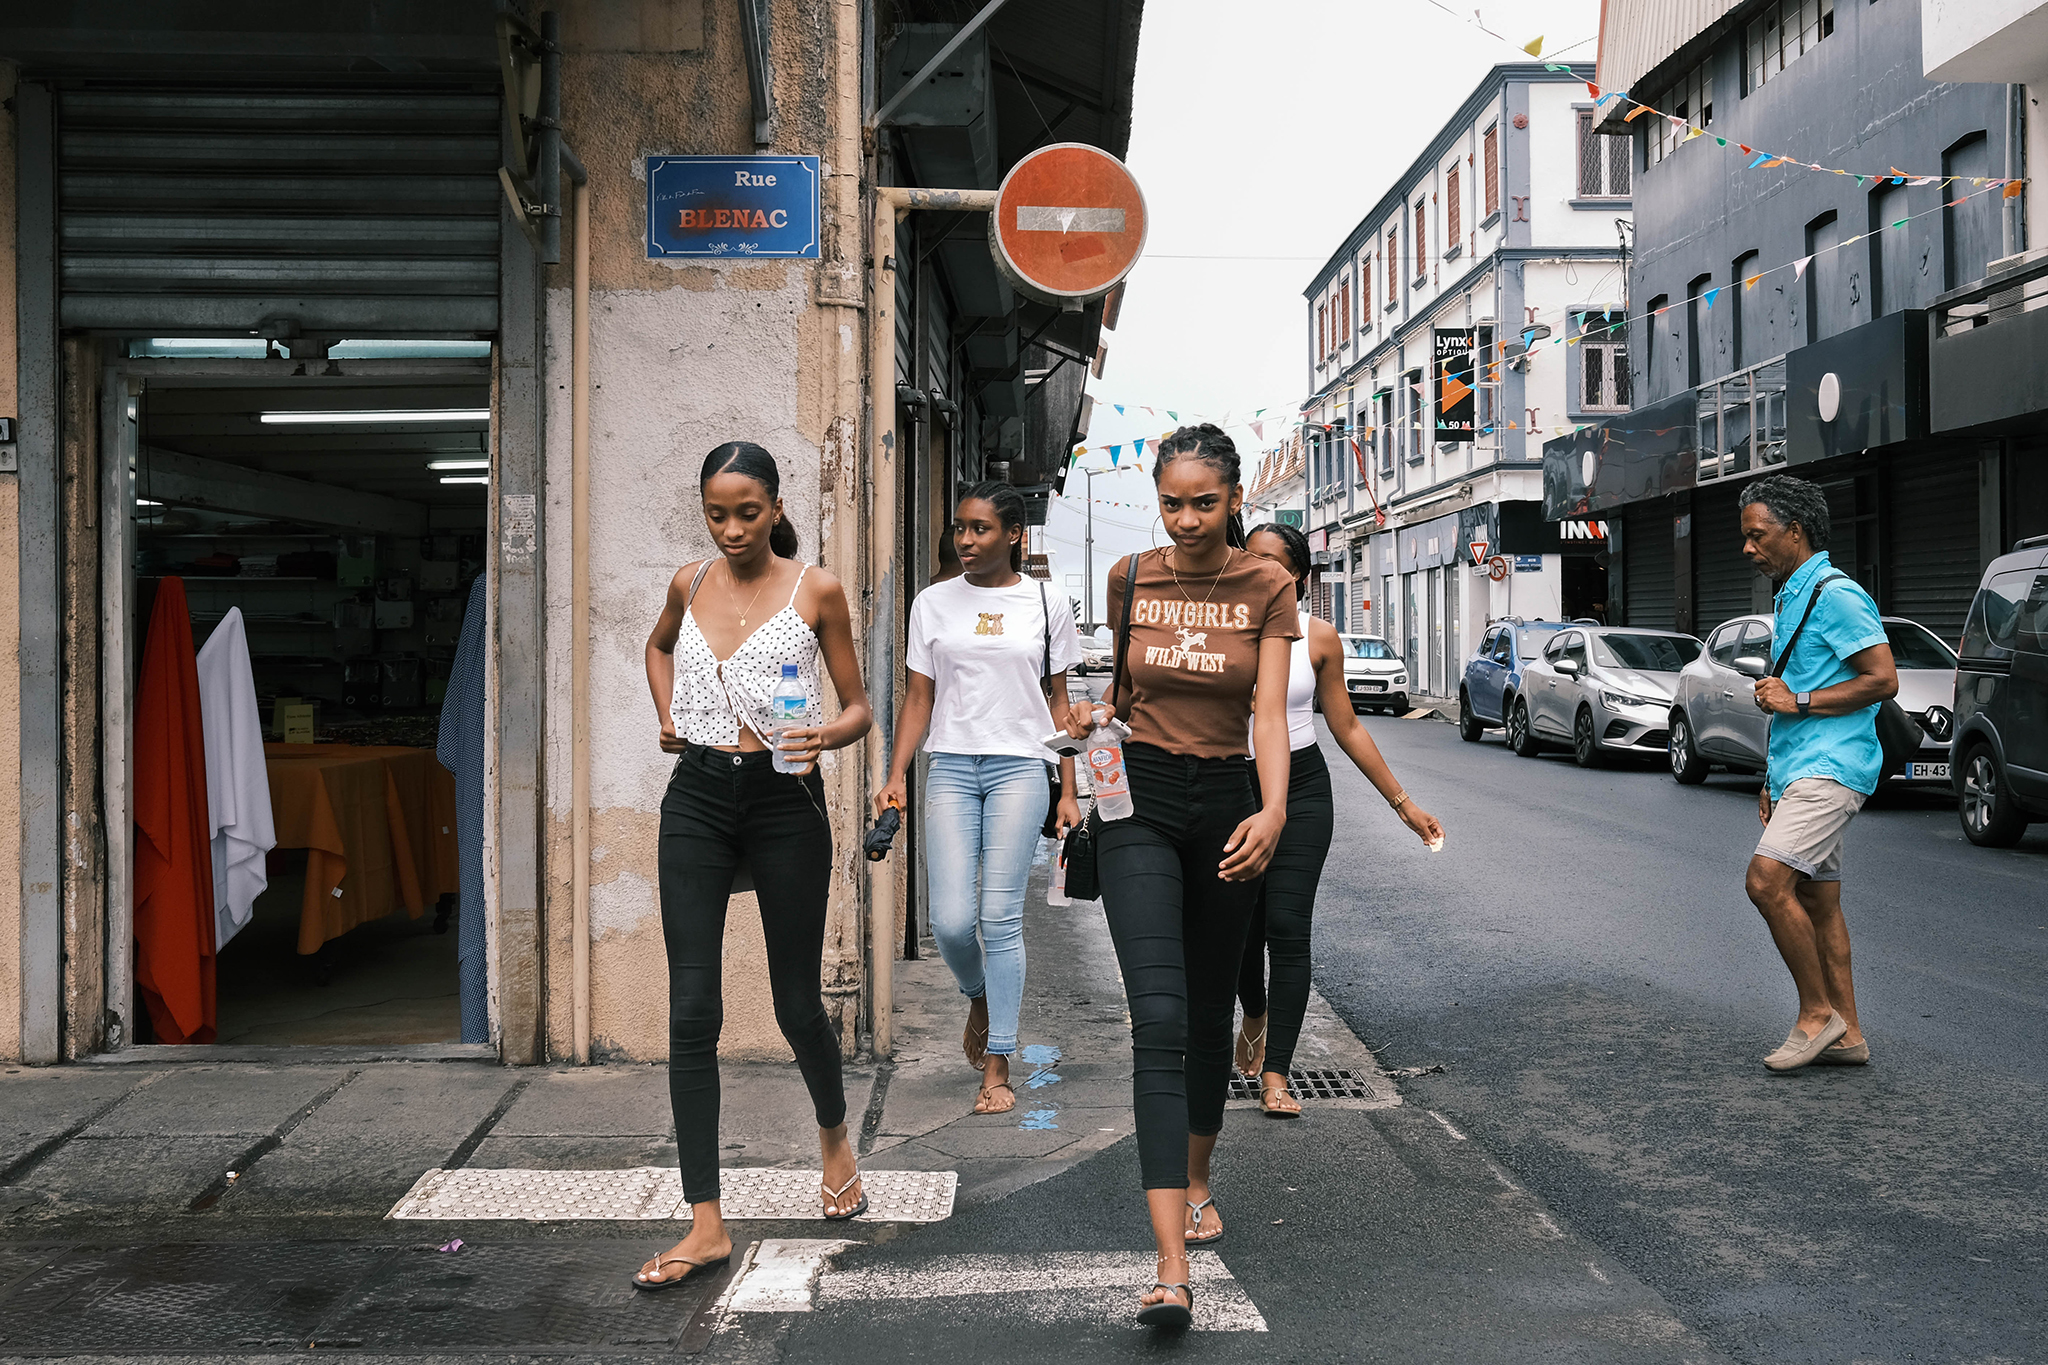 Geez_FDF_Martinique_girls_rue_blenac_2048